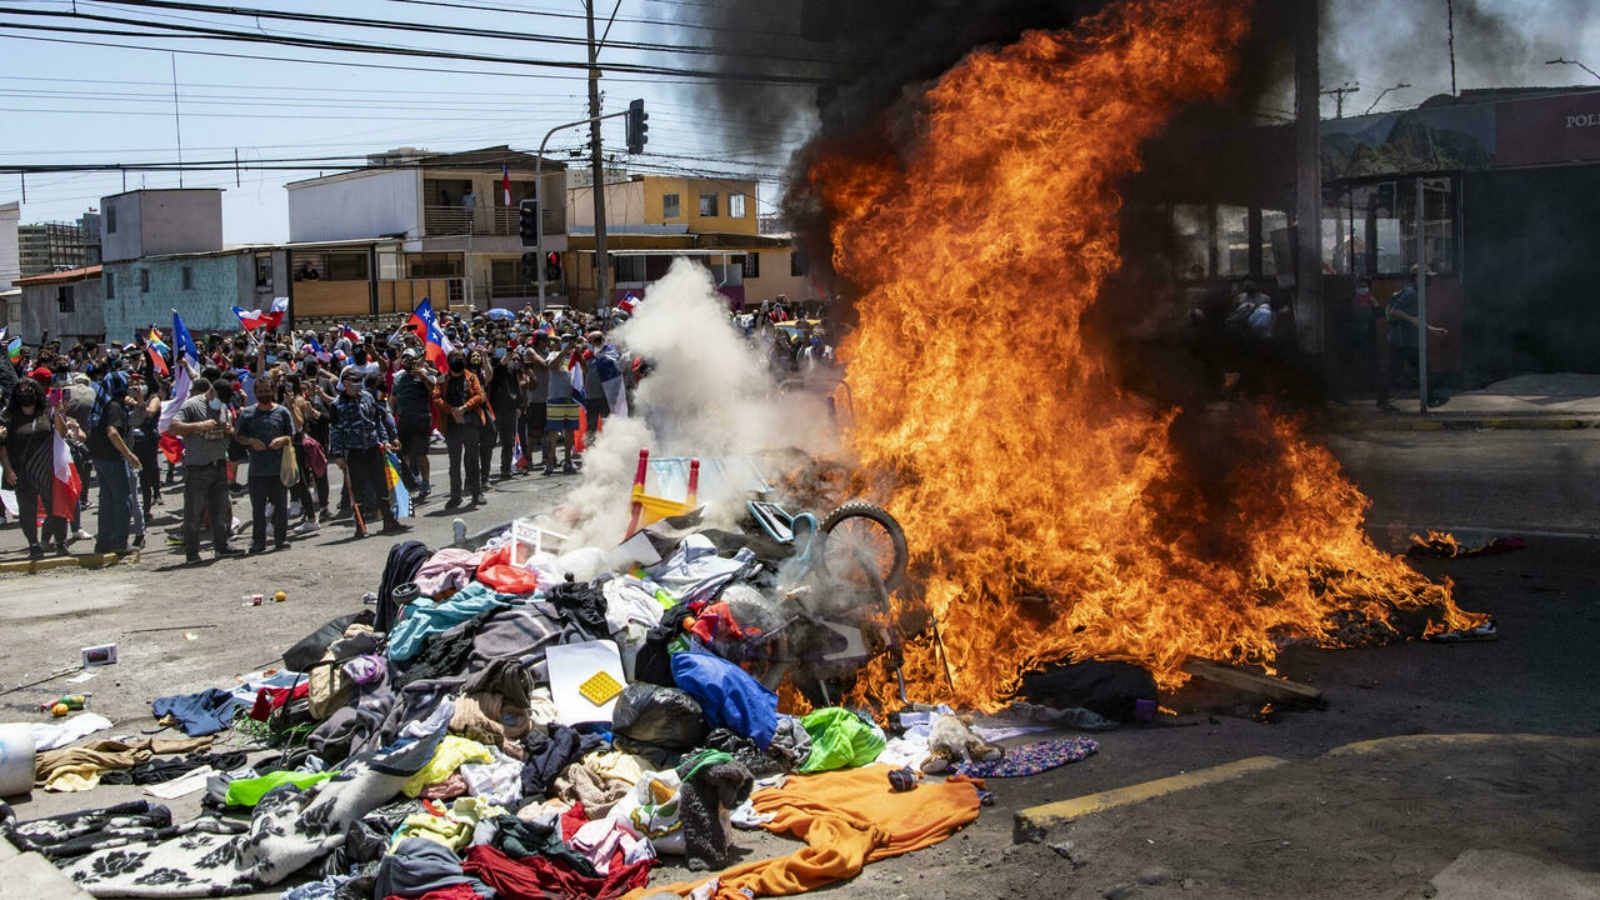 متظاهرون يحرقون ممتلكاتهم في مخيم مؤقت للمهاجرين الفنزويليين خلال احتجاج في إكيكي، تشيلي. في 25 أيلول/ سبتمبر 2021